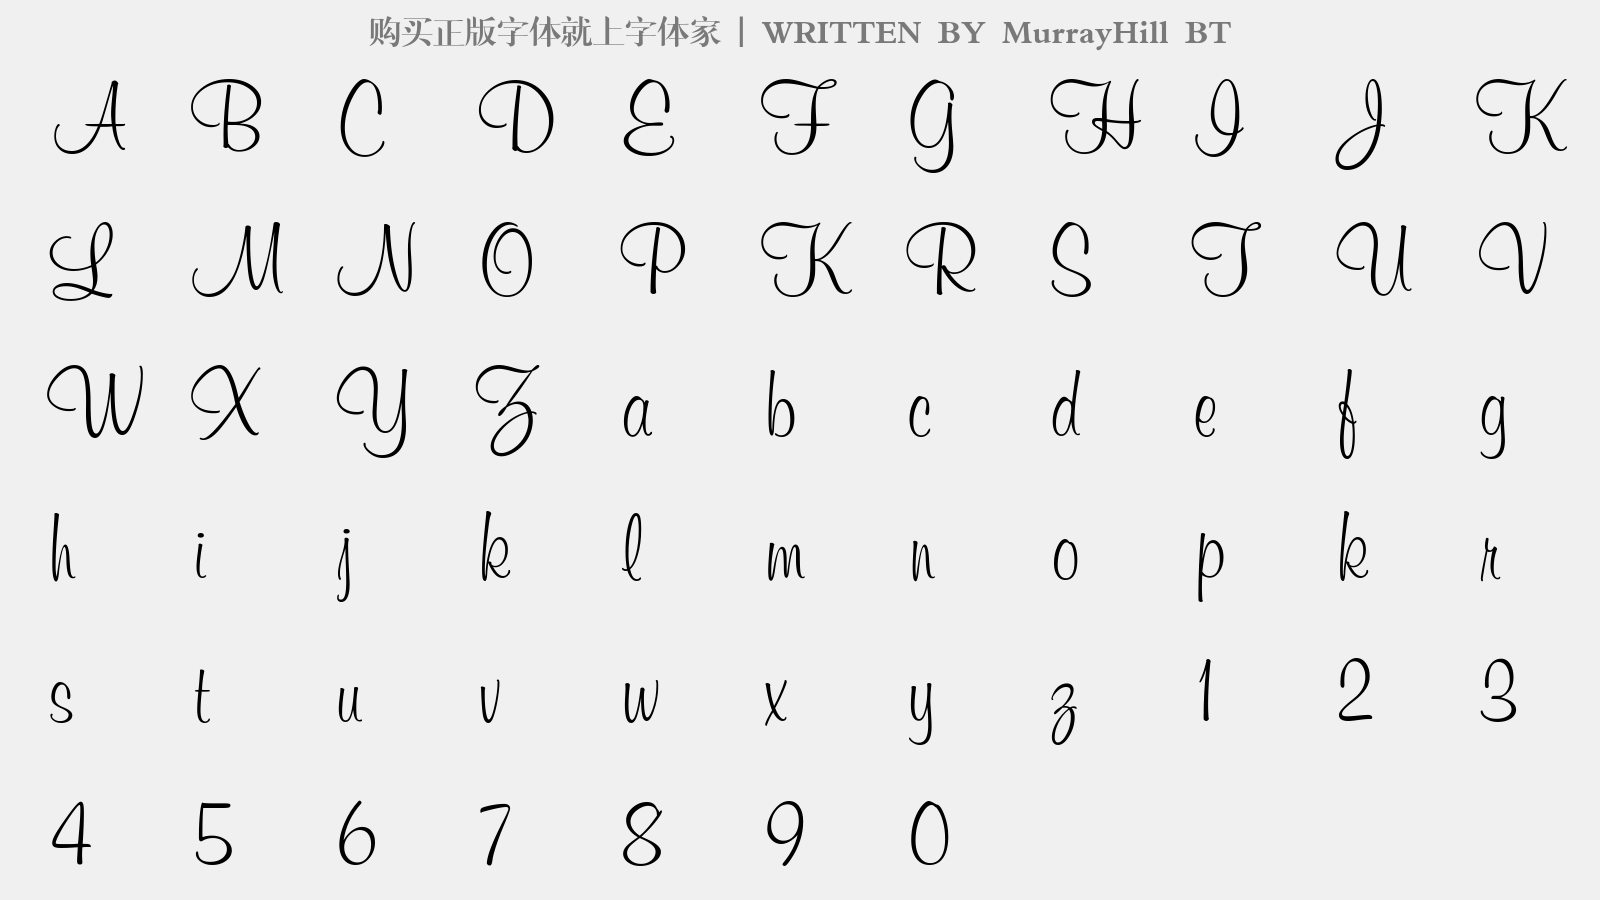 MurrayHill BT - 大写字母/小写字母/数字